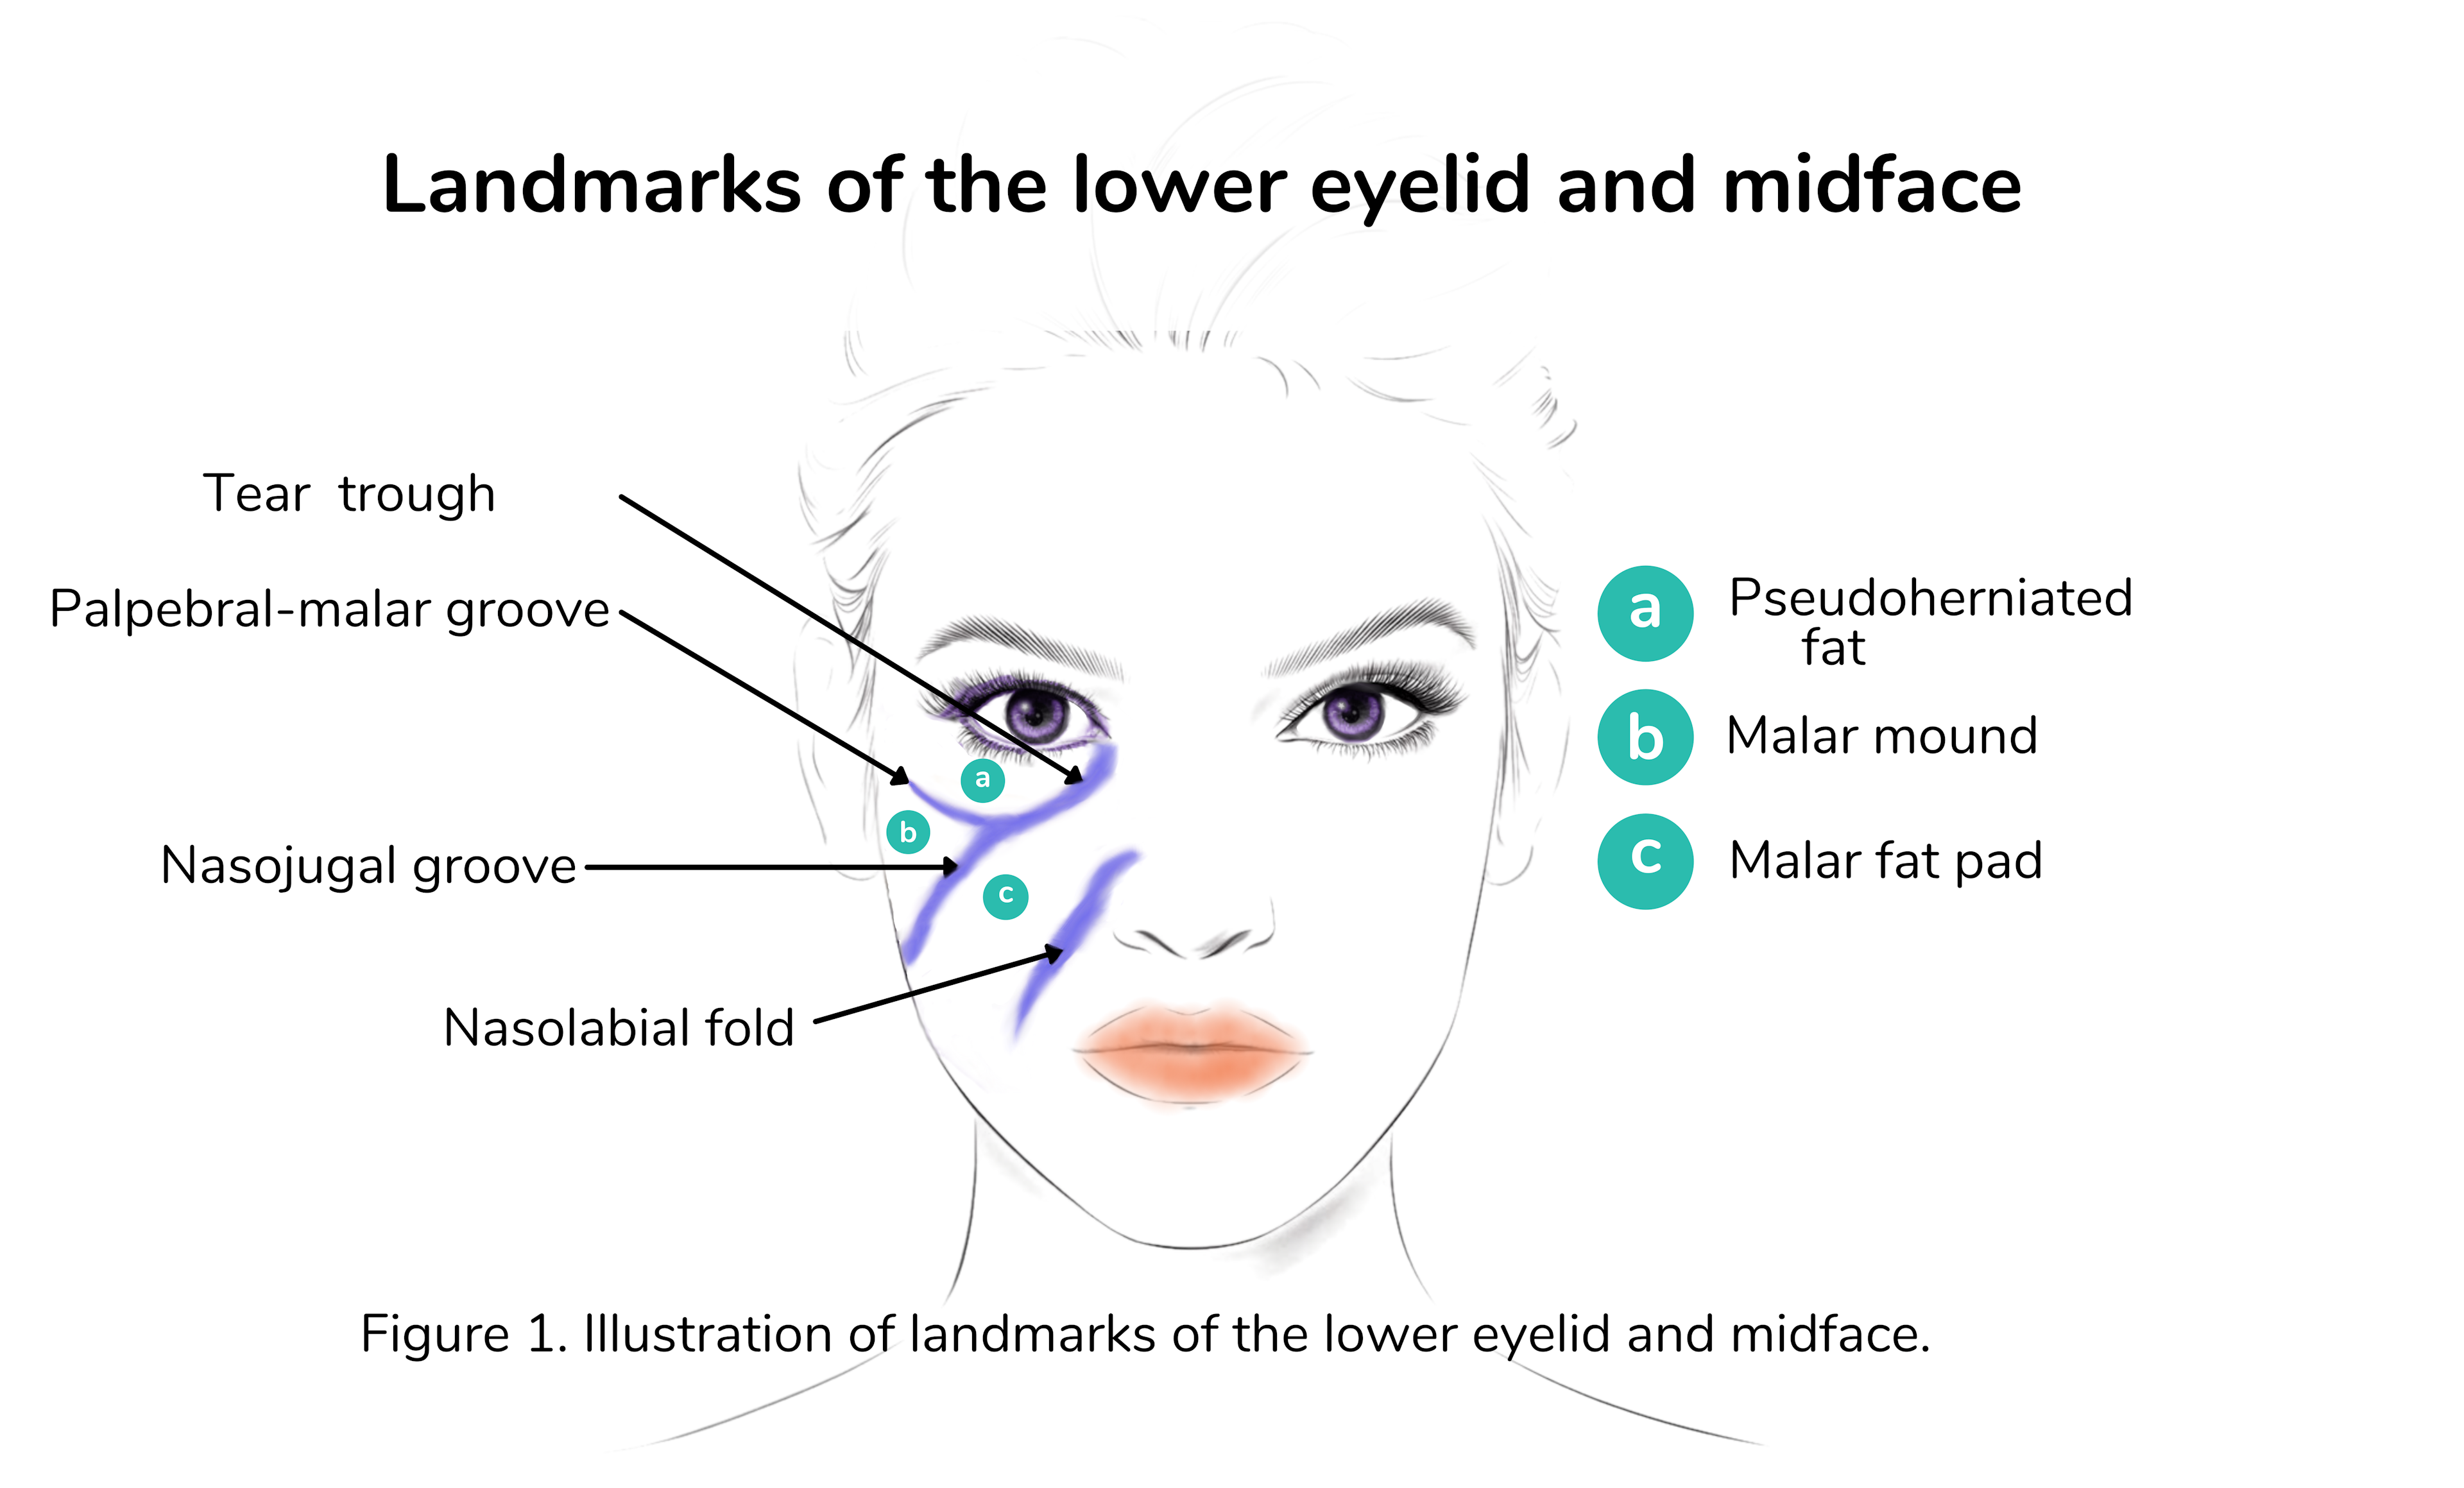 Lower eyelid and midface landmarks